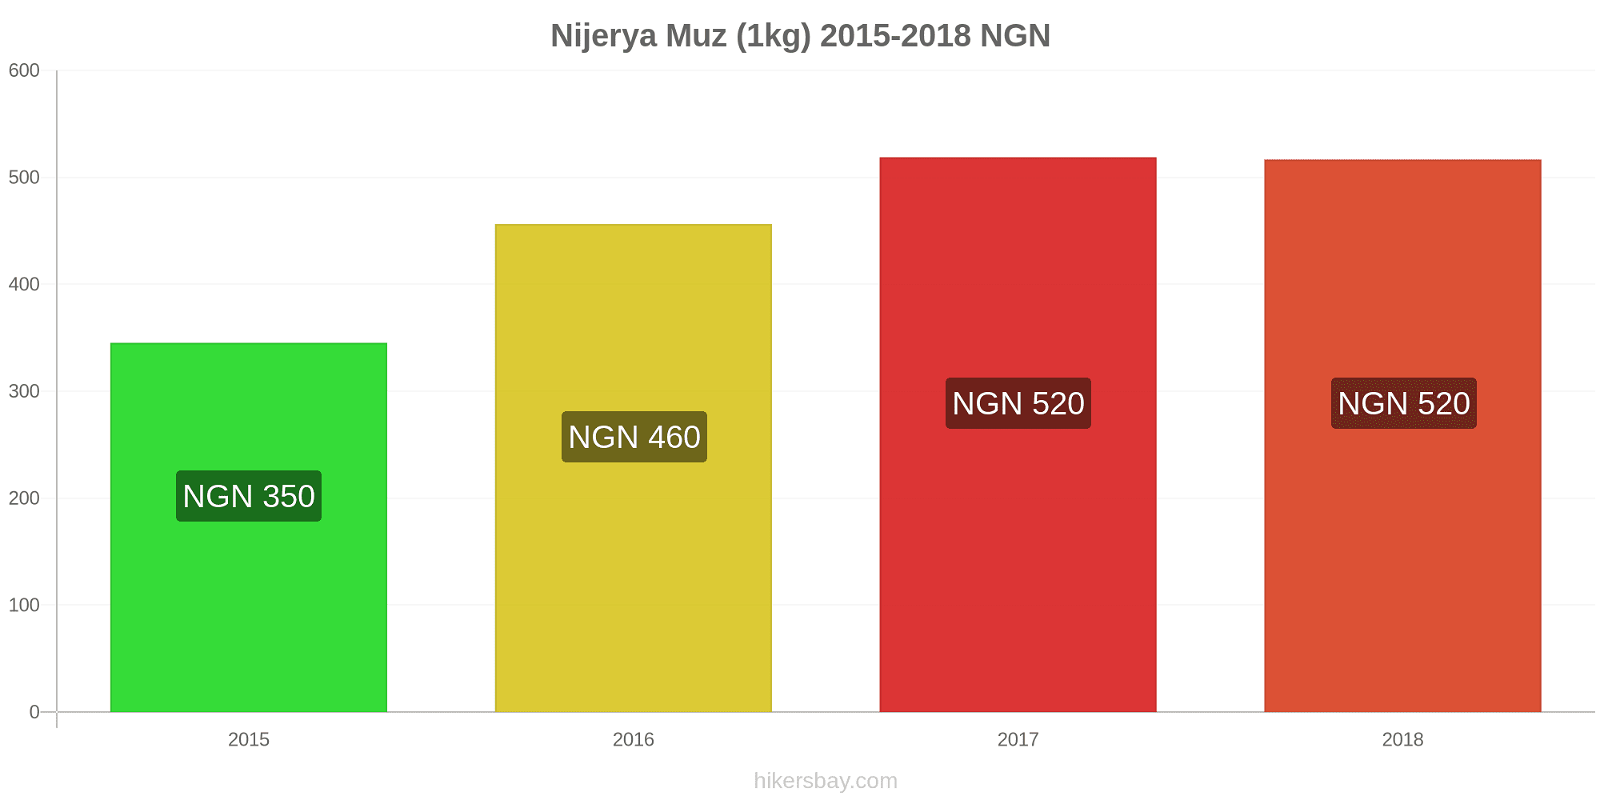 Nijerya fiyat değişiklikleri Muzlar (1kg) hikersbay.com